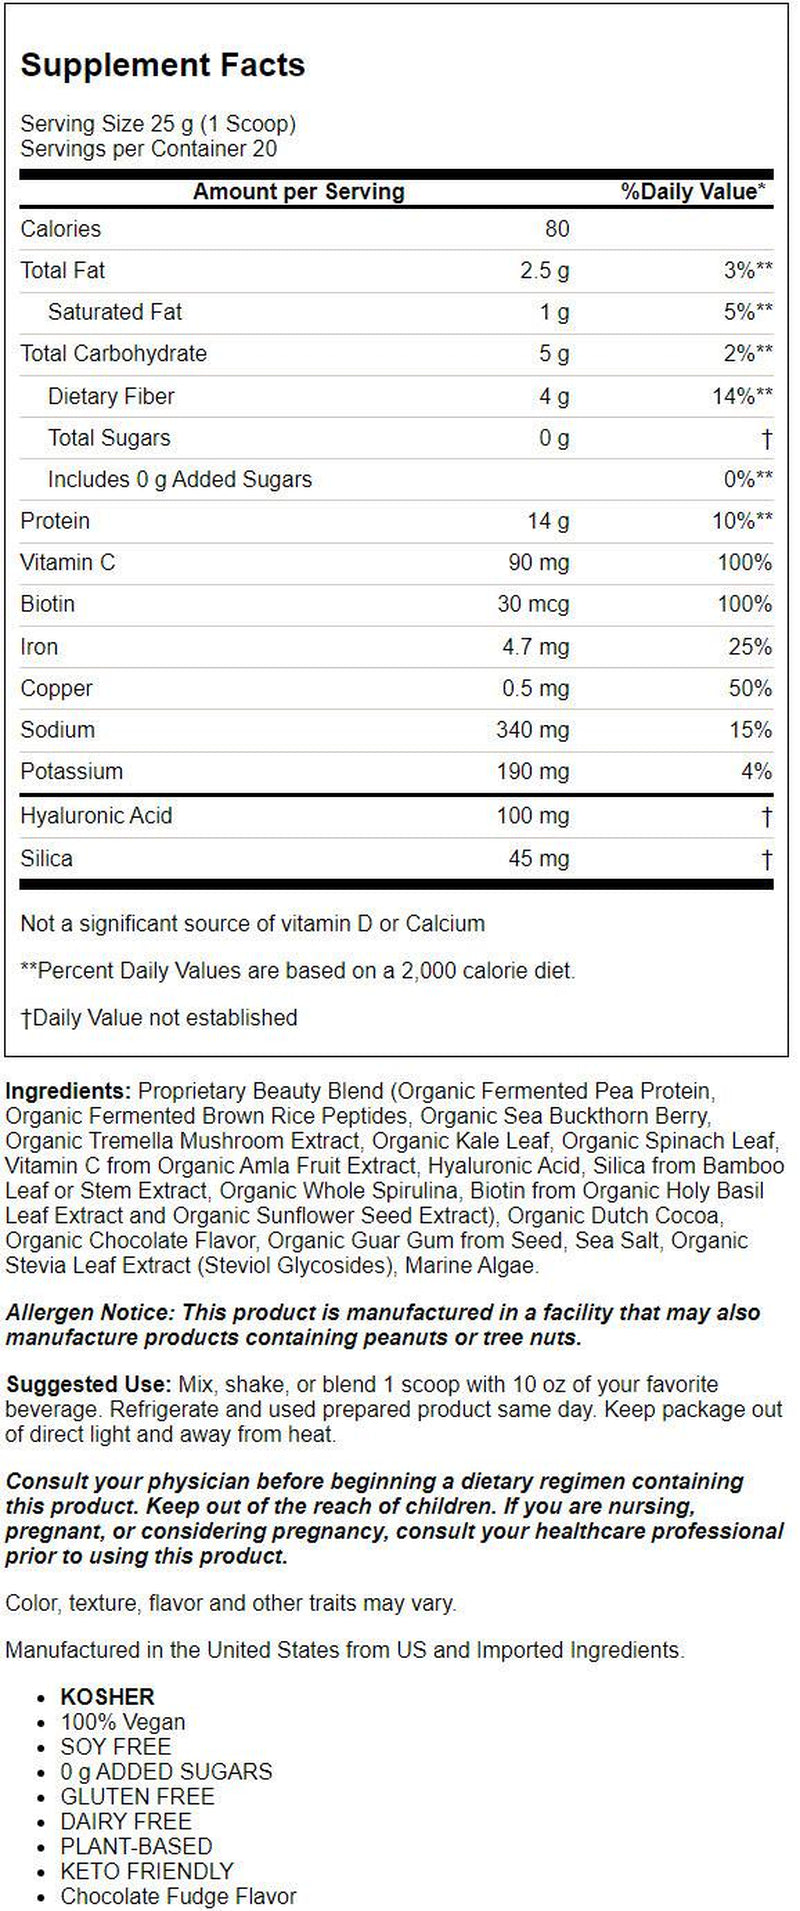 Sunwarrior Vegan Collagen Powder | Chocolate Protein Collagen Peptides Powder with Hyaluronic Acid & Biotin, 500G